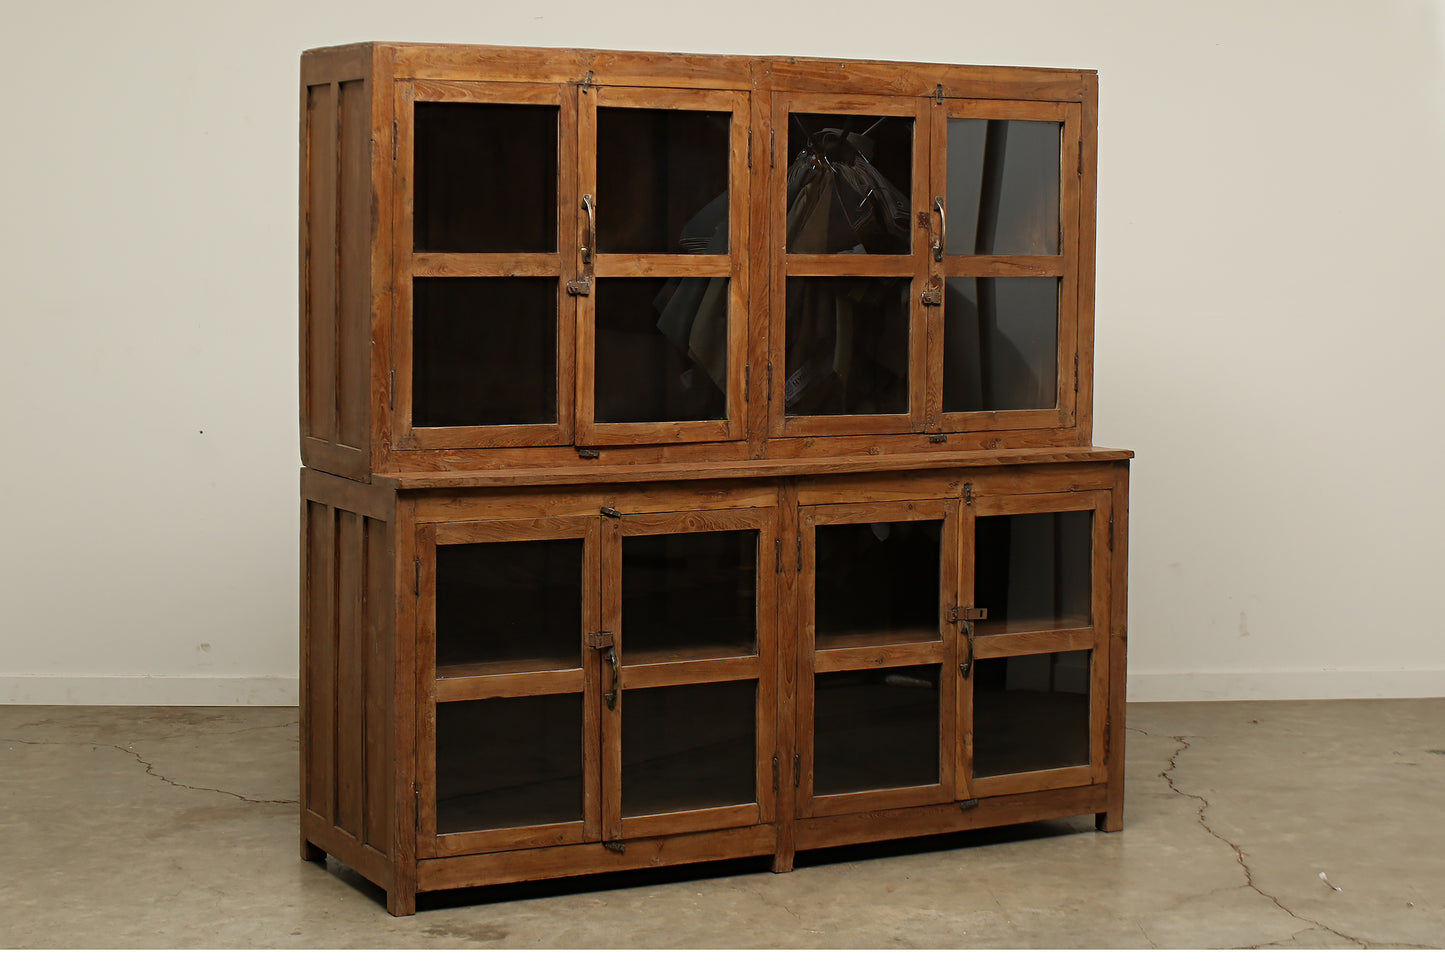 (SCL047) Vintage Teak Cabinet